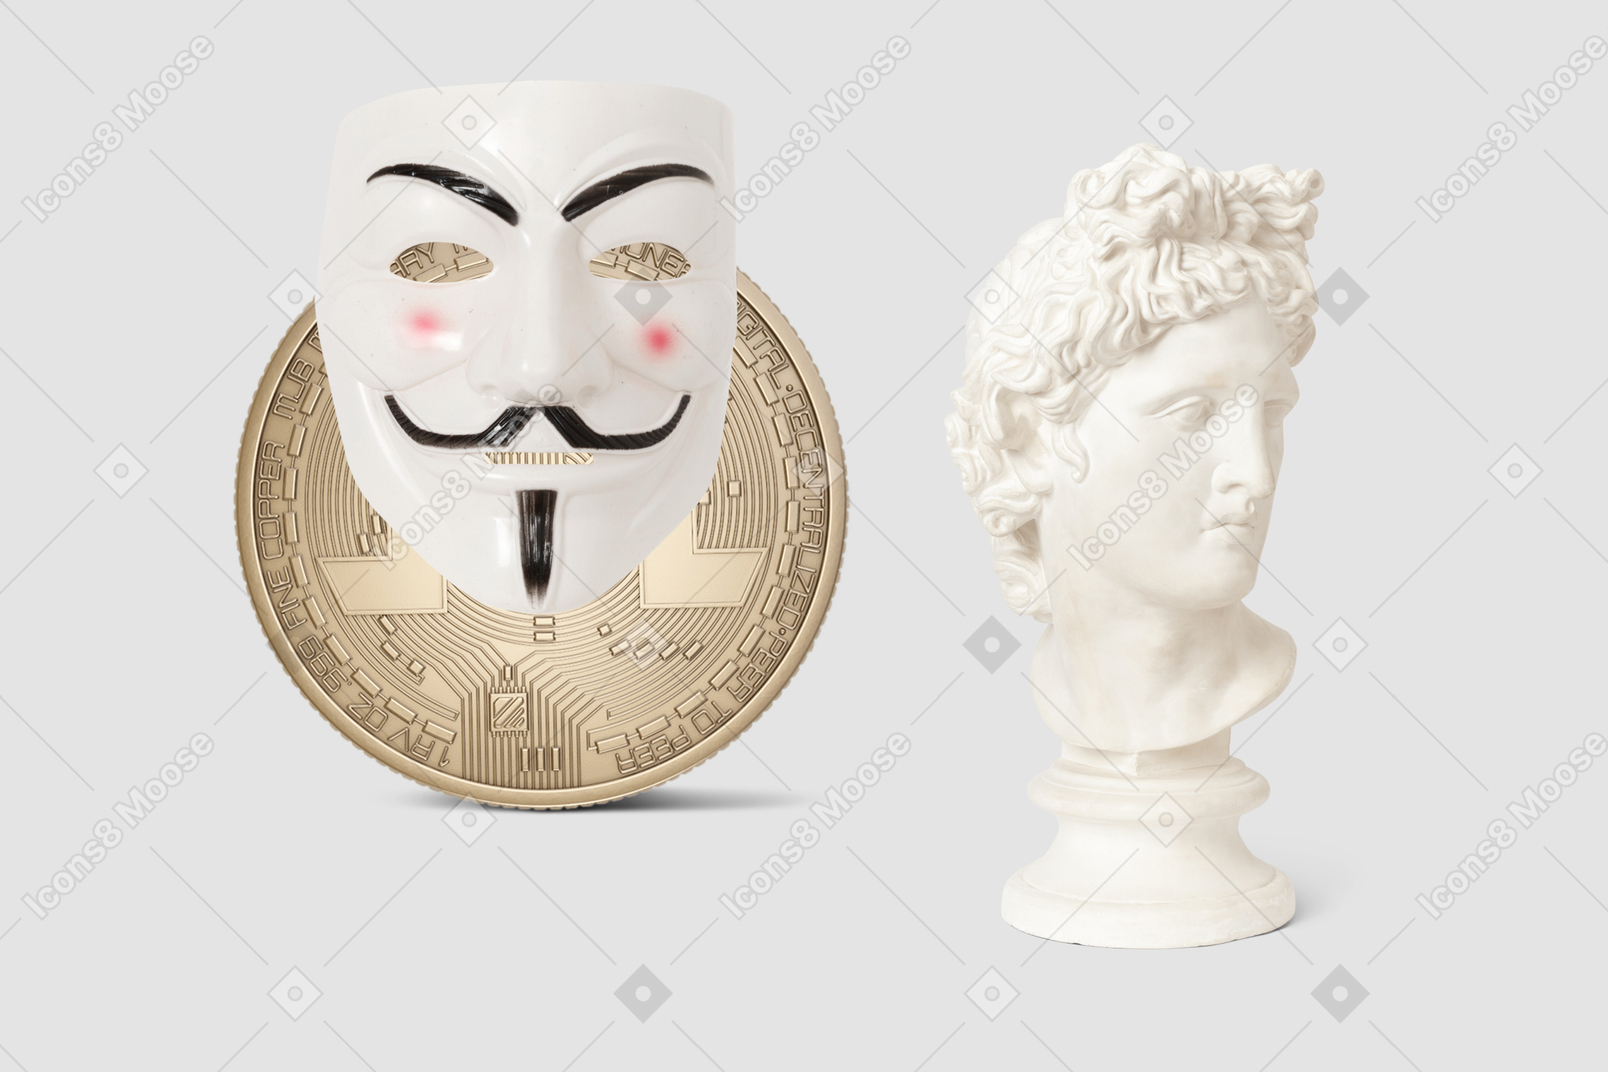 Buste de statue, masque anonyme et bitcoin